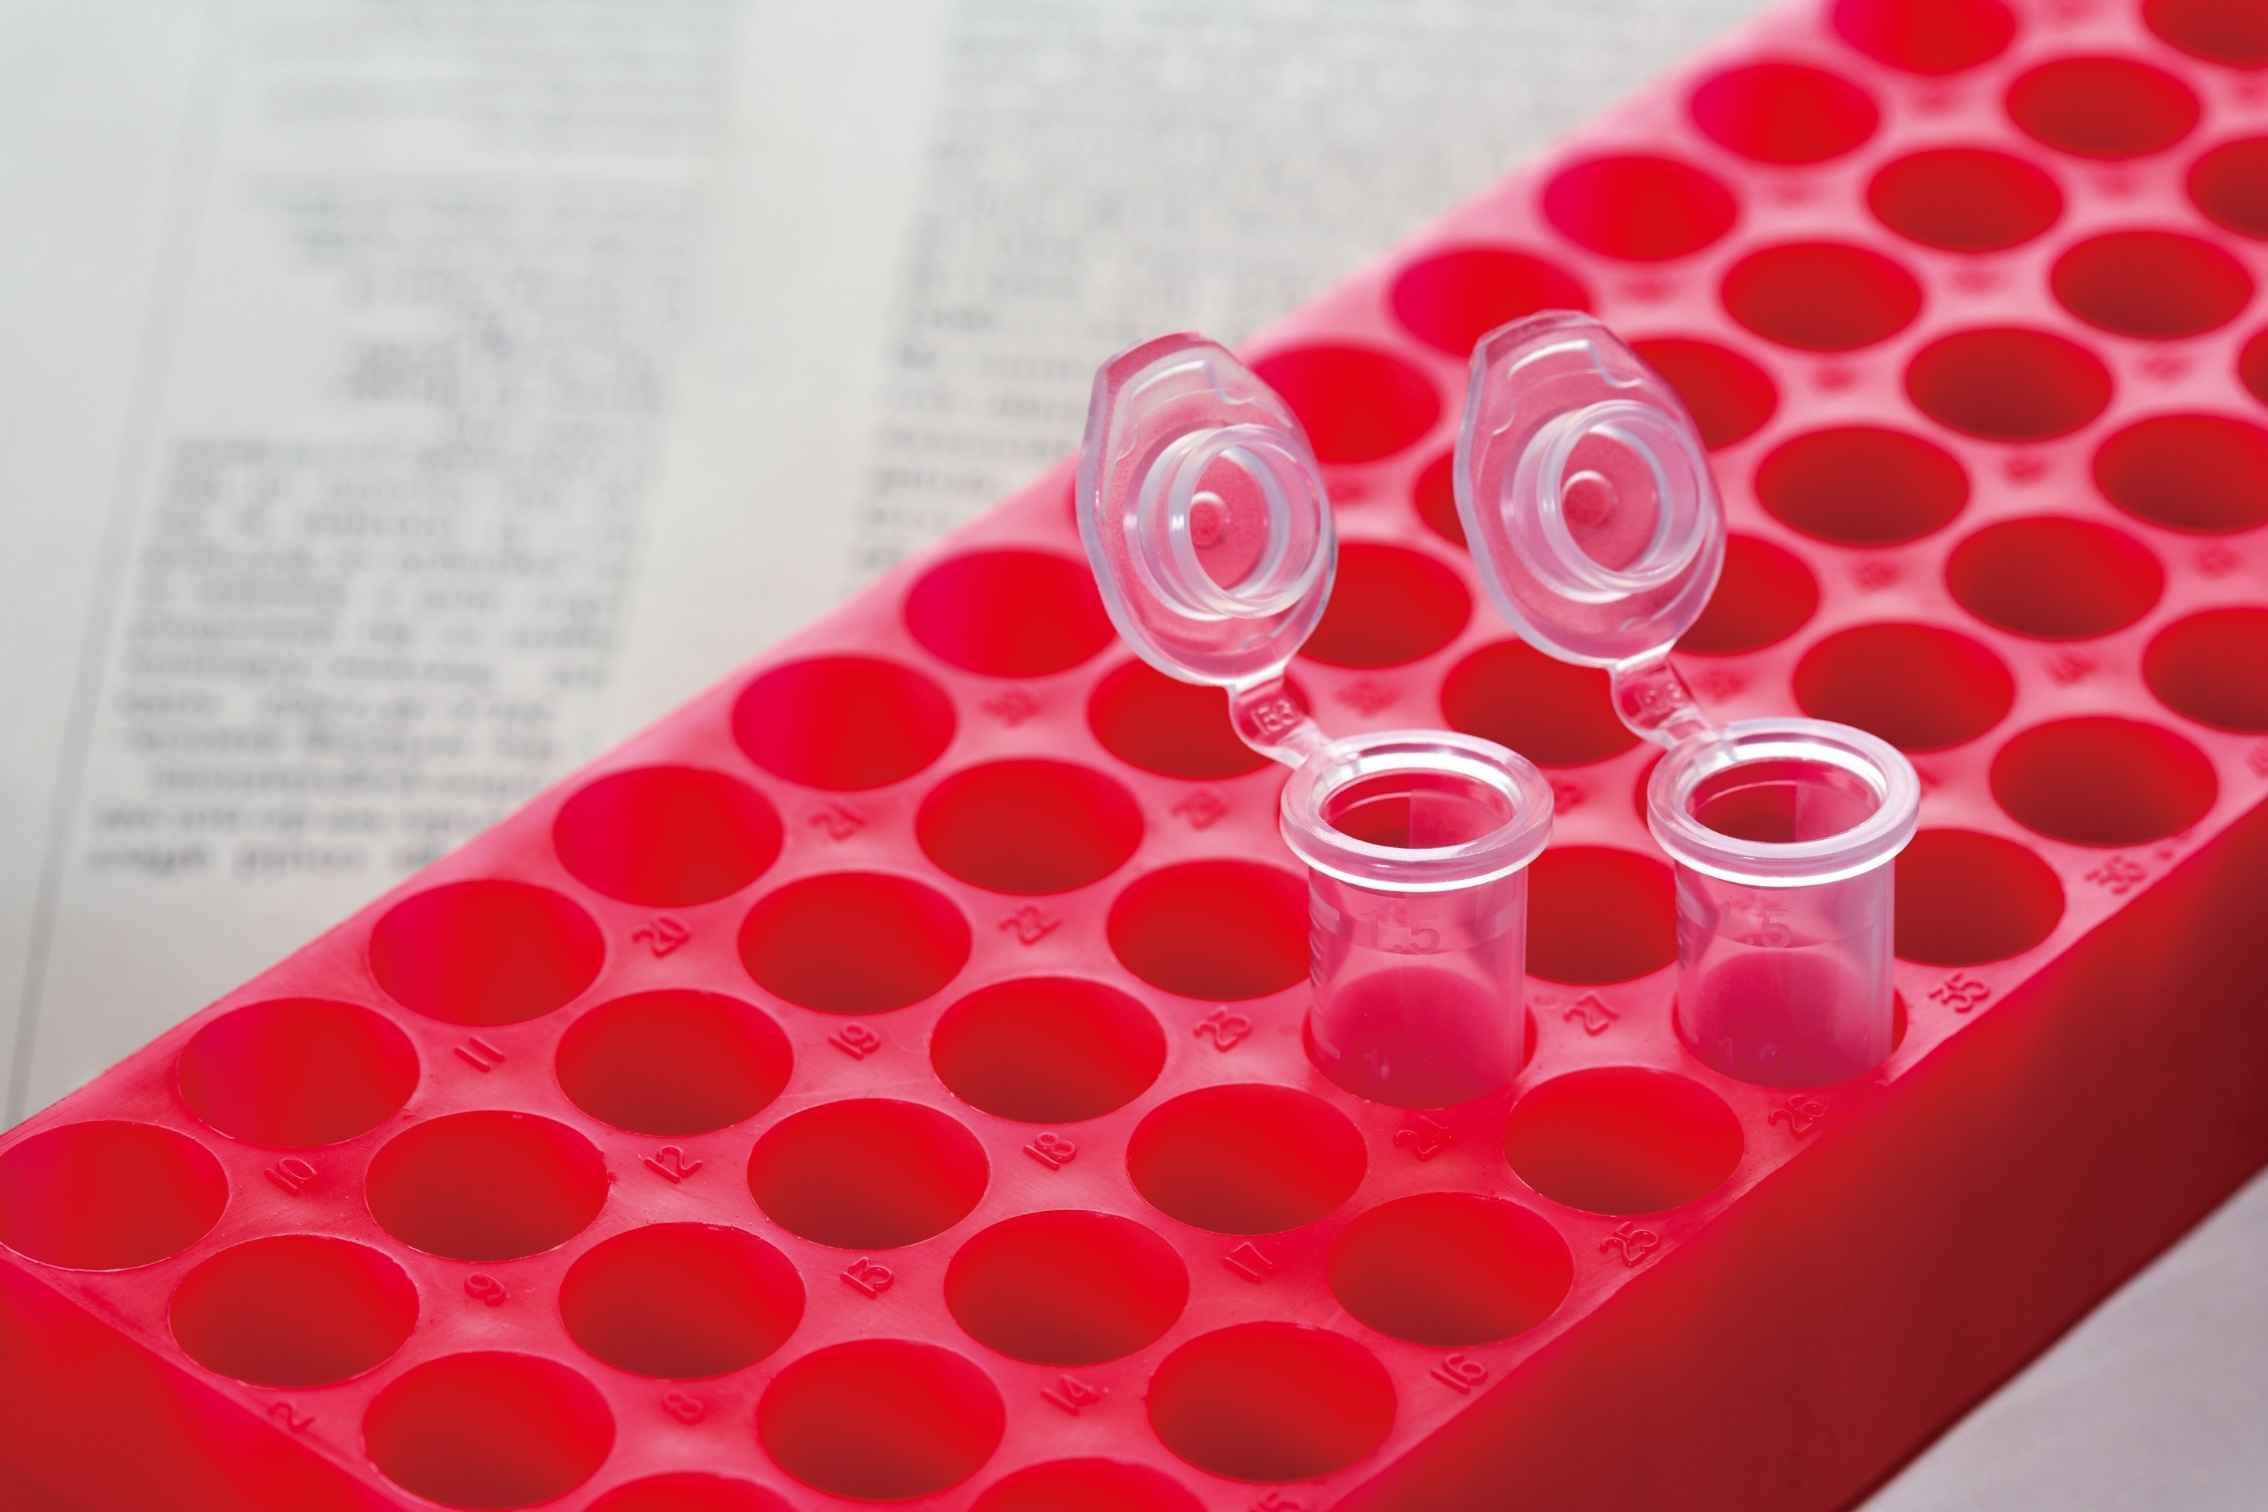 Анализ ДНК МТHFR на врожденную тенденцию к повышенному уровню гомоцистеина в крови